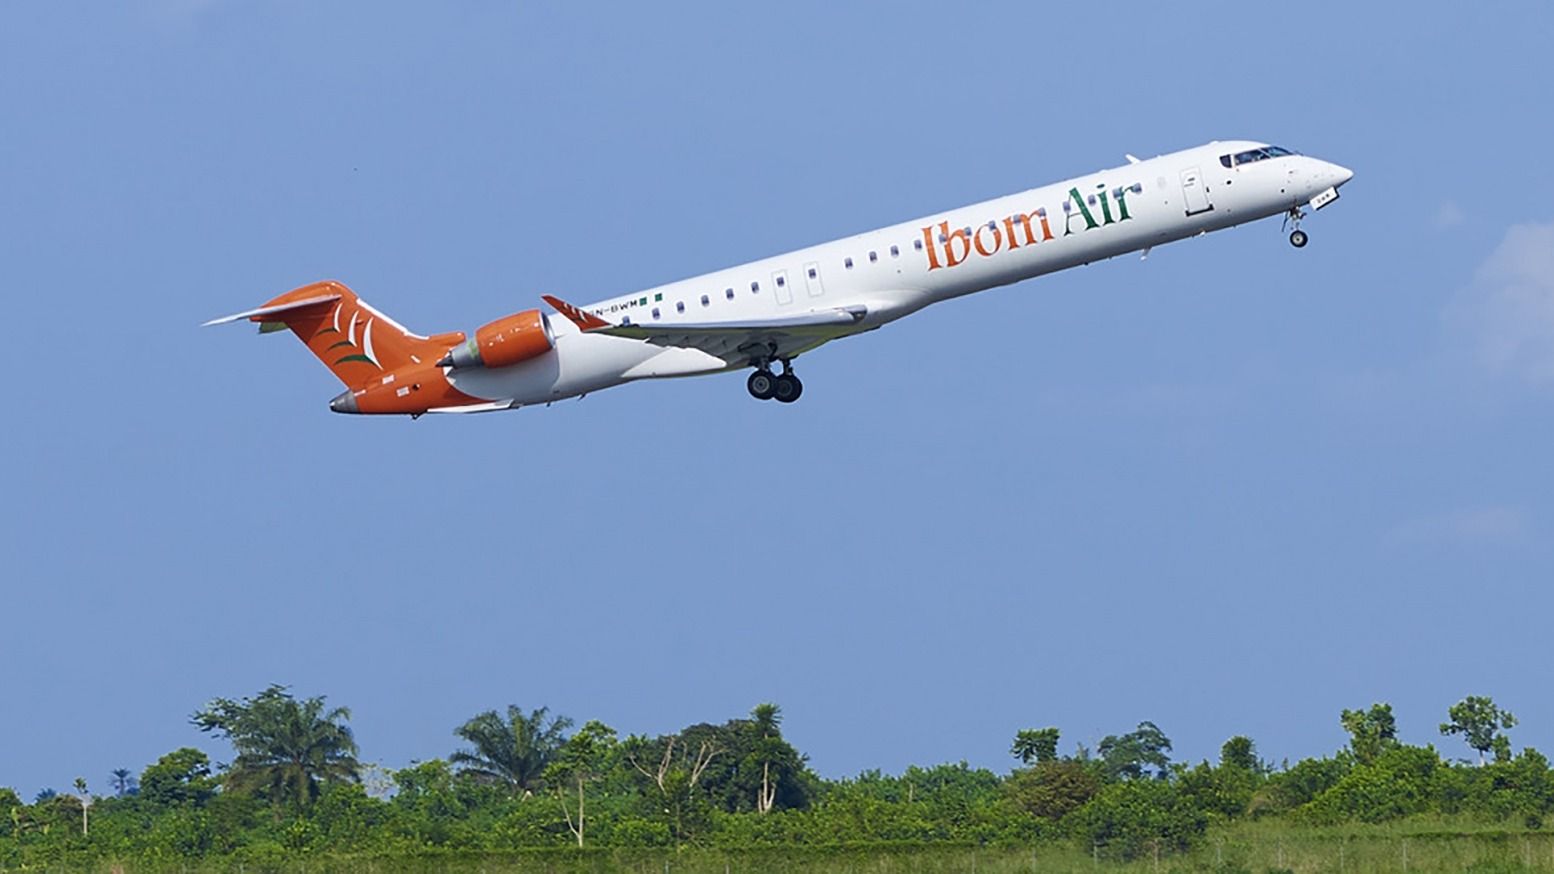 Ibom Air CRJ900 taking off